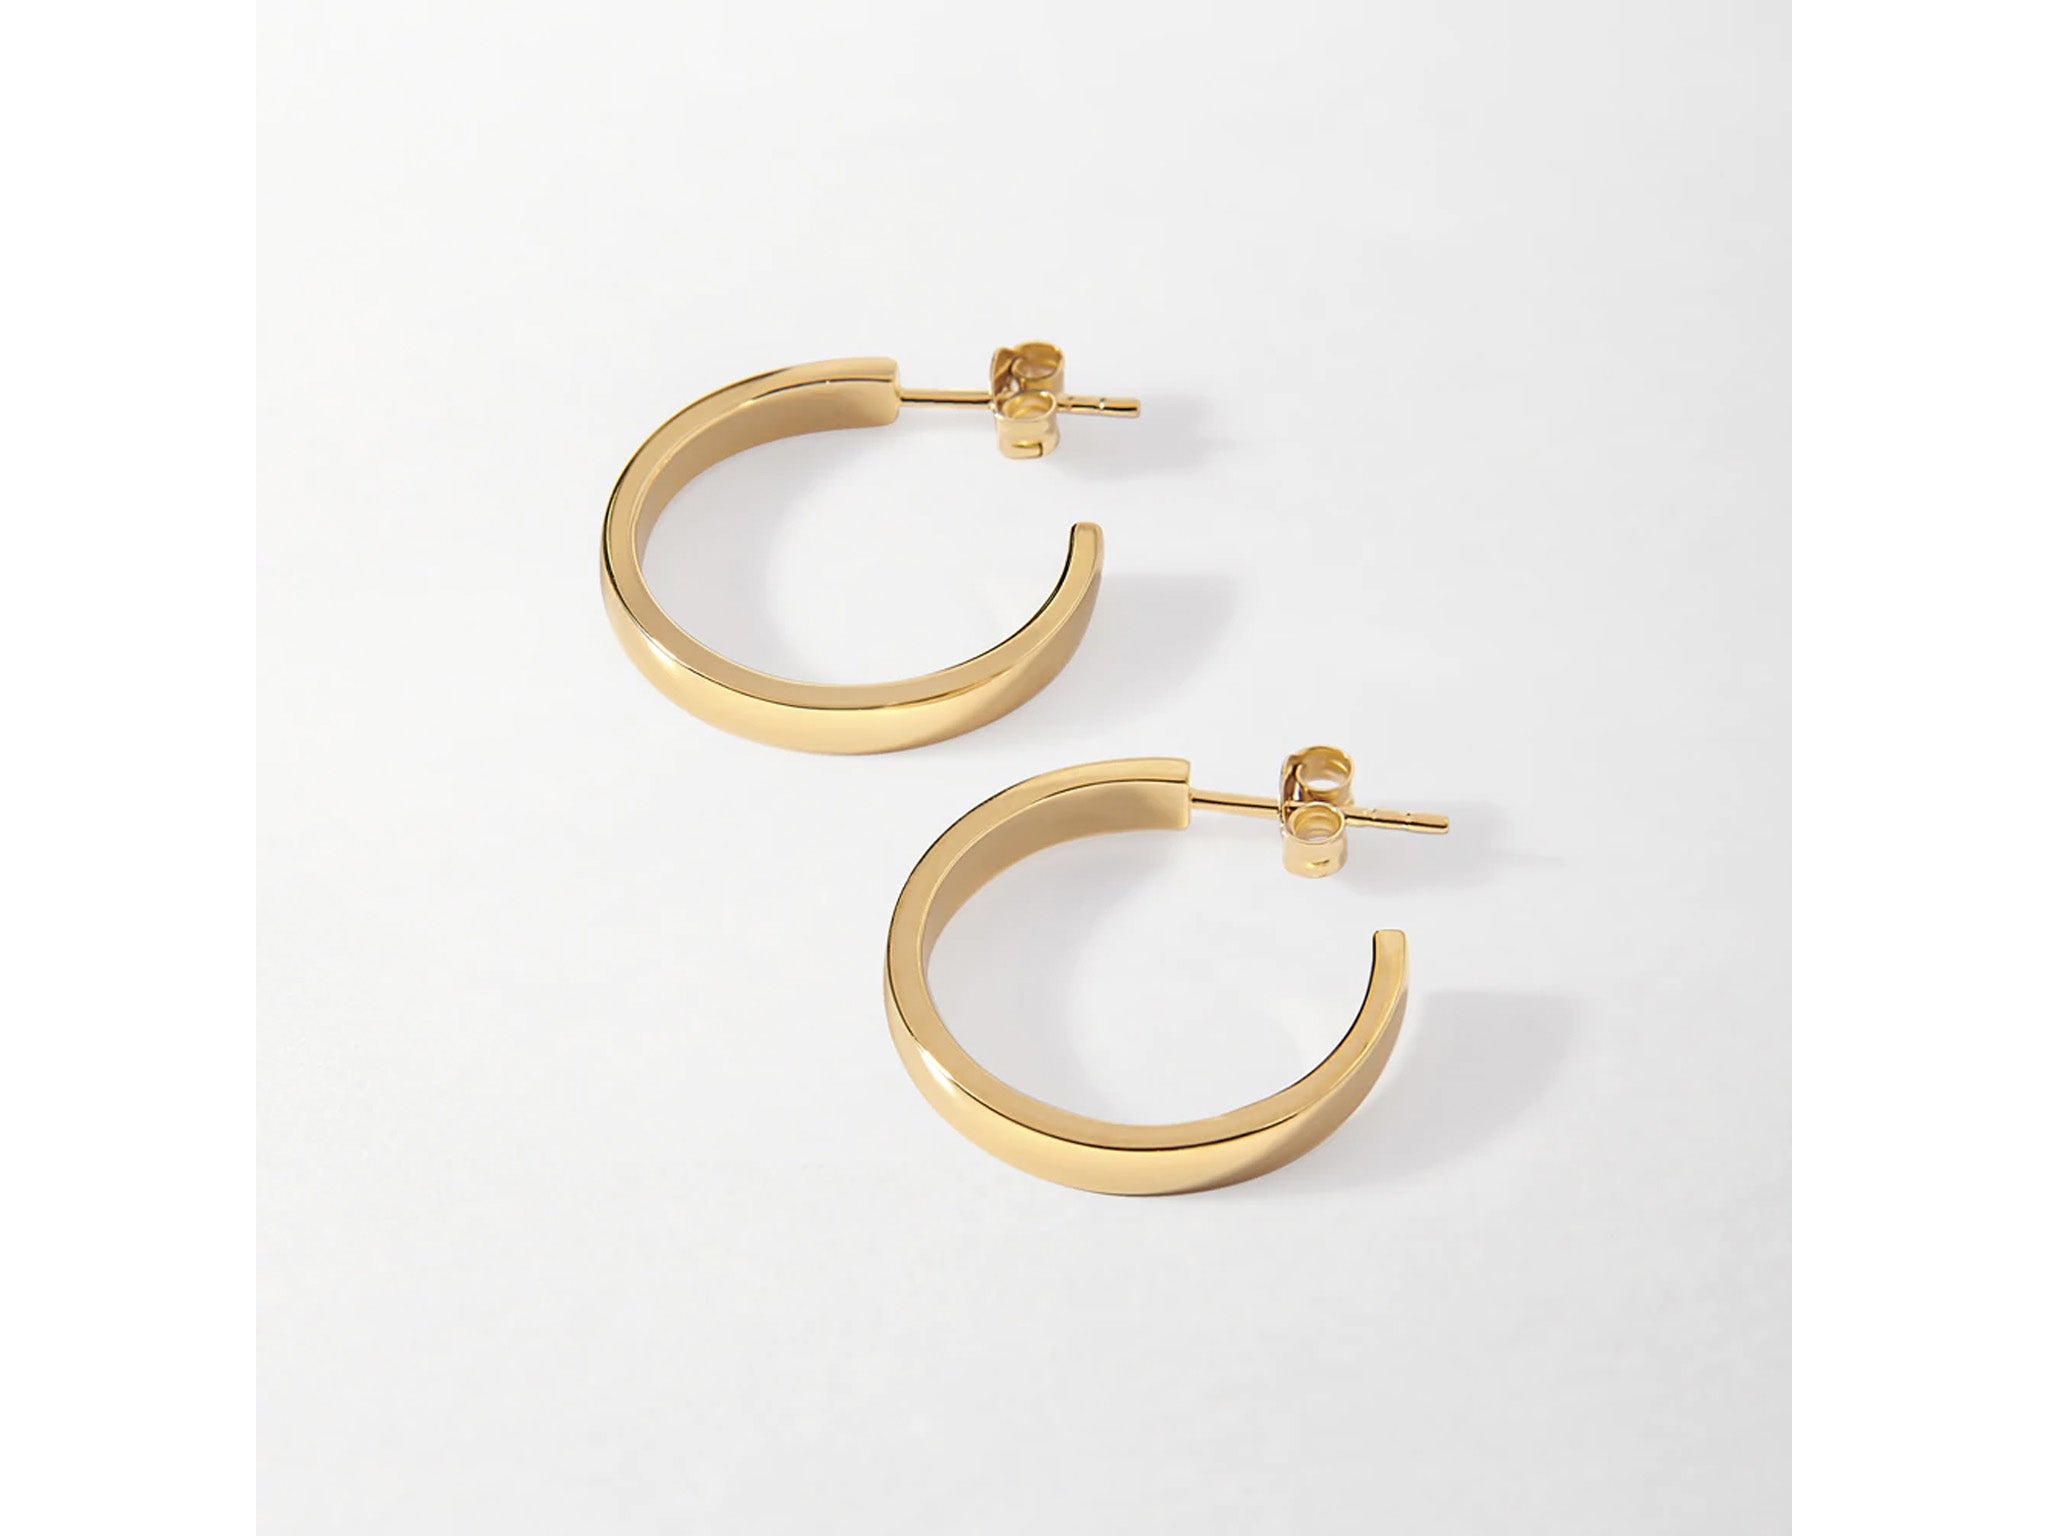 Gold Hoop Earrings  Small Gold Hoop Earrings  9ct Gold Hoop Earrings